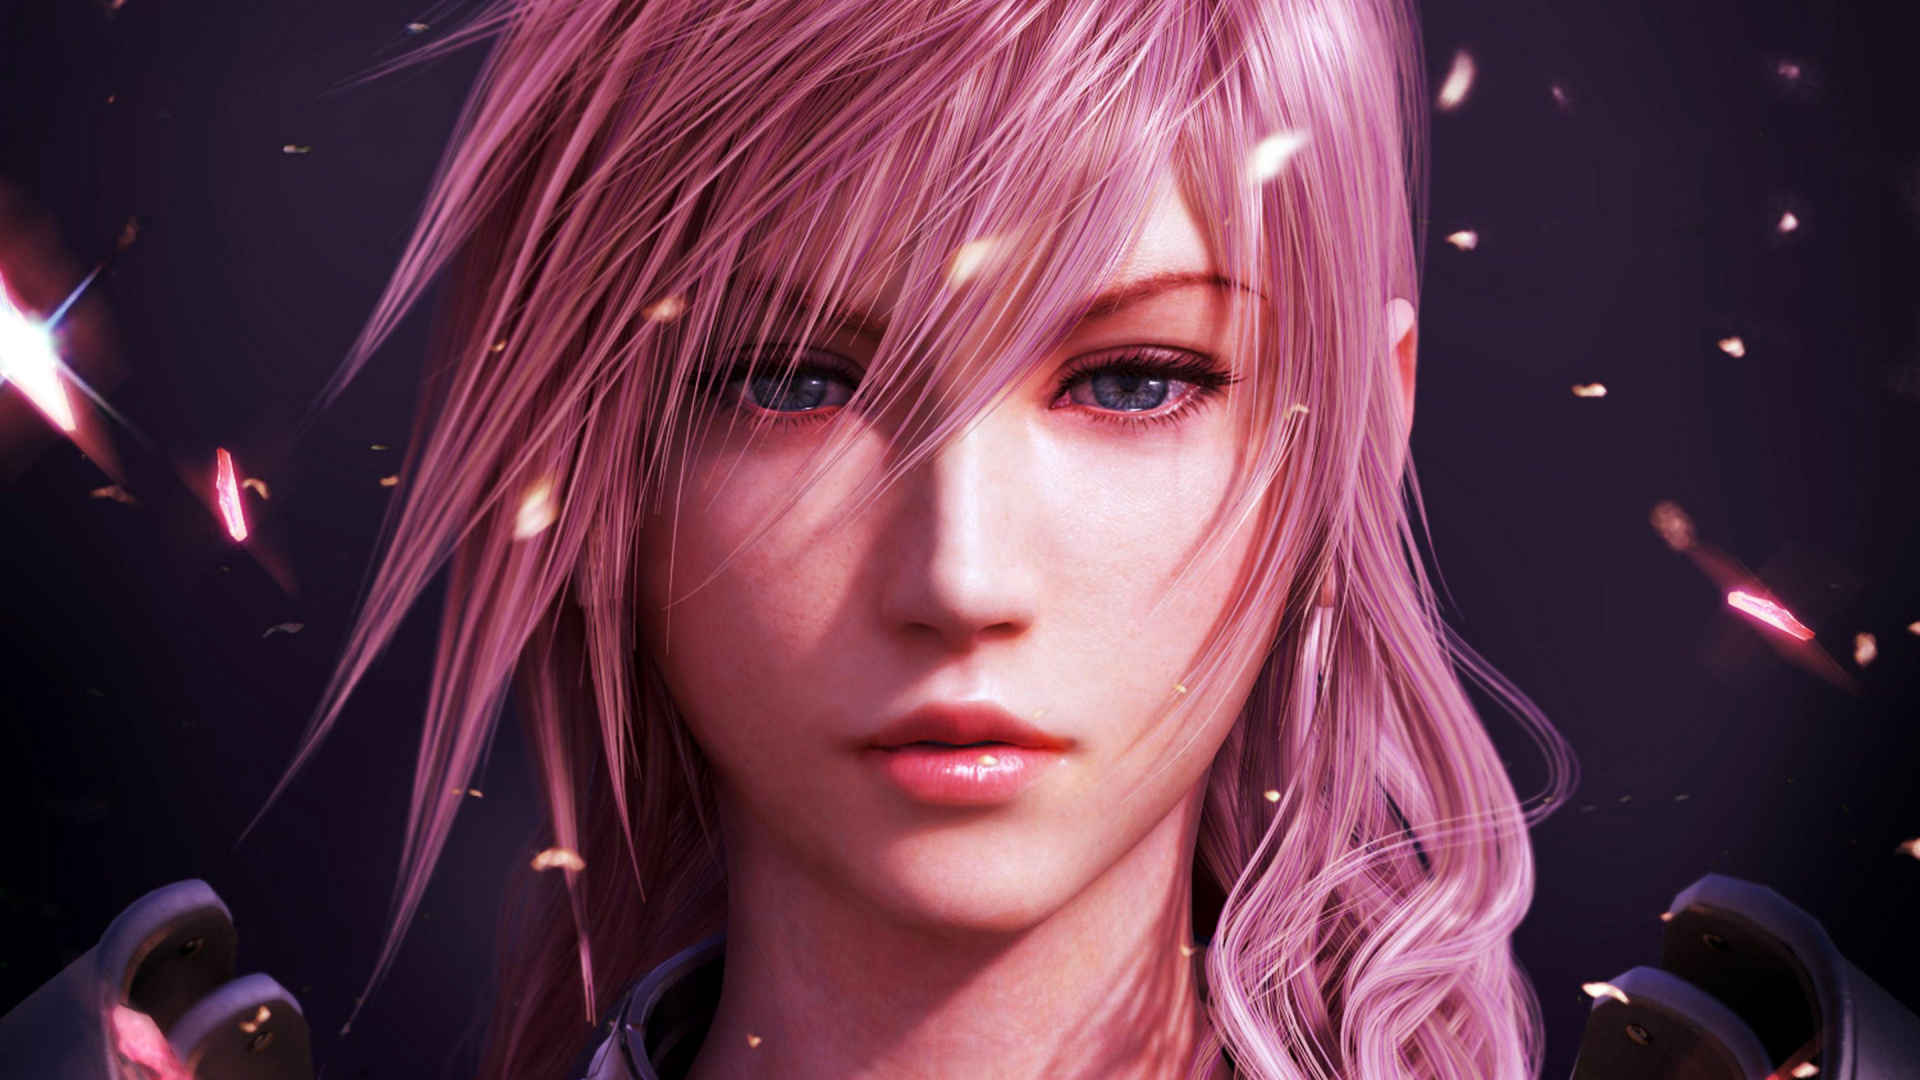 Final Fantasy, Lightning, Video Game, Girl Warrior, - Lightning Final Fantasy Wallpaper Hd - HD Wallpaper 